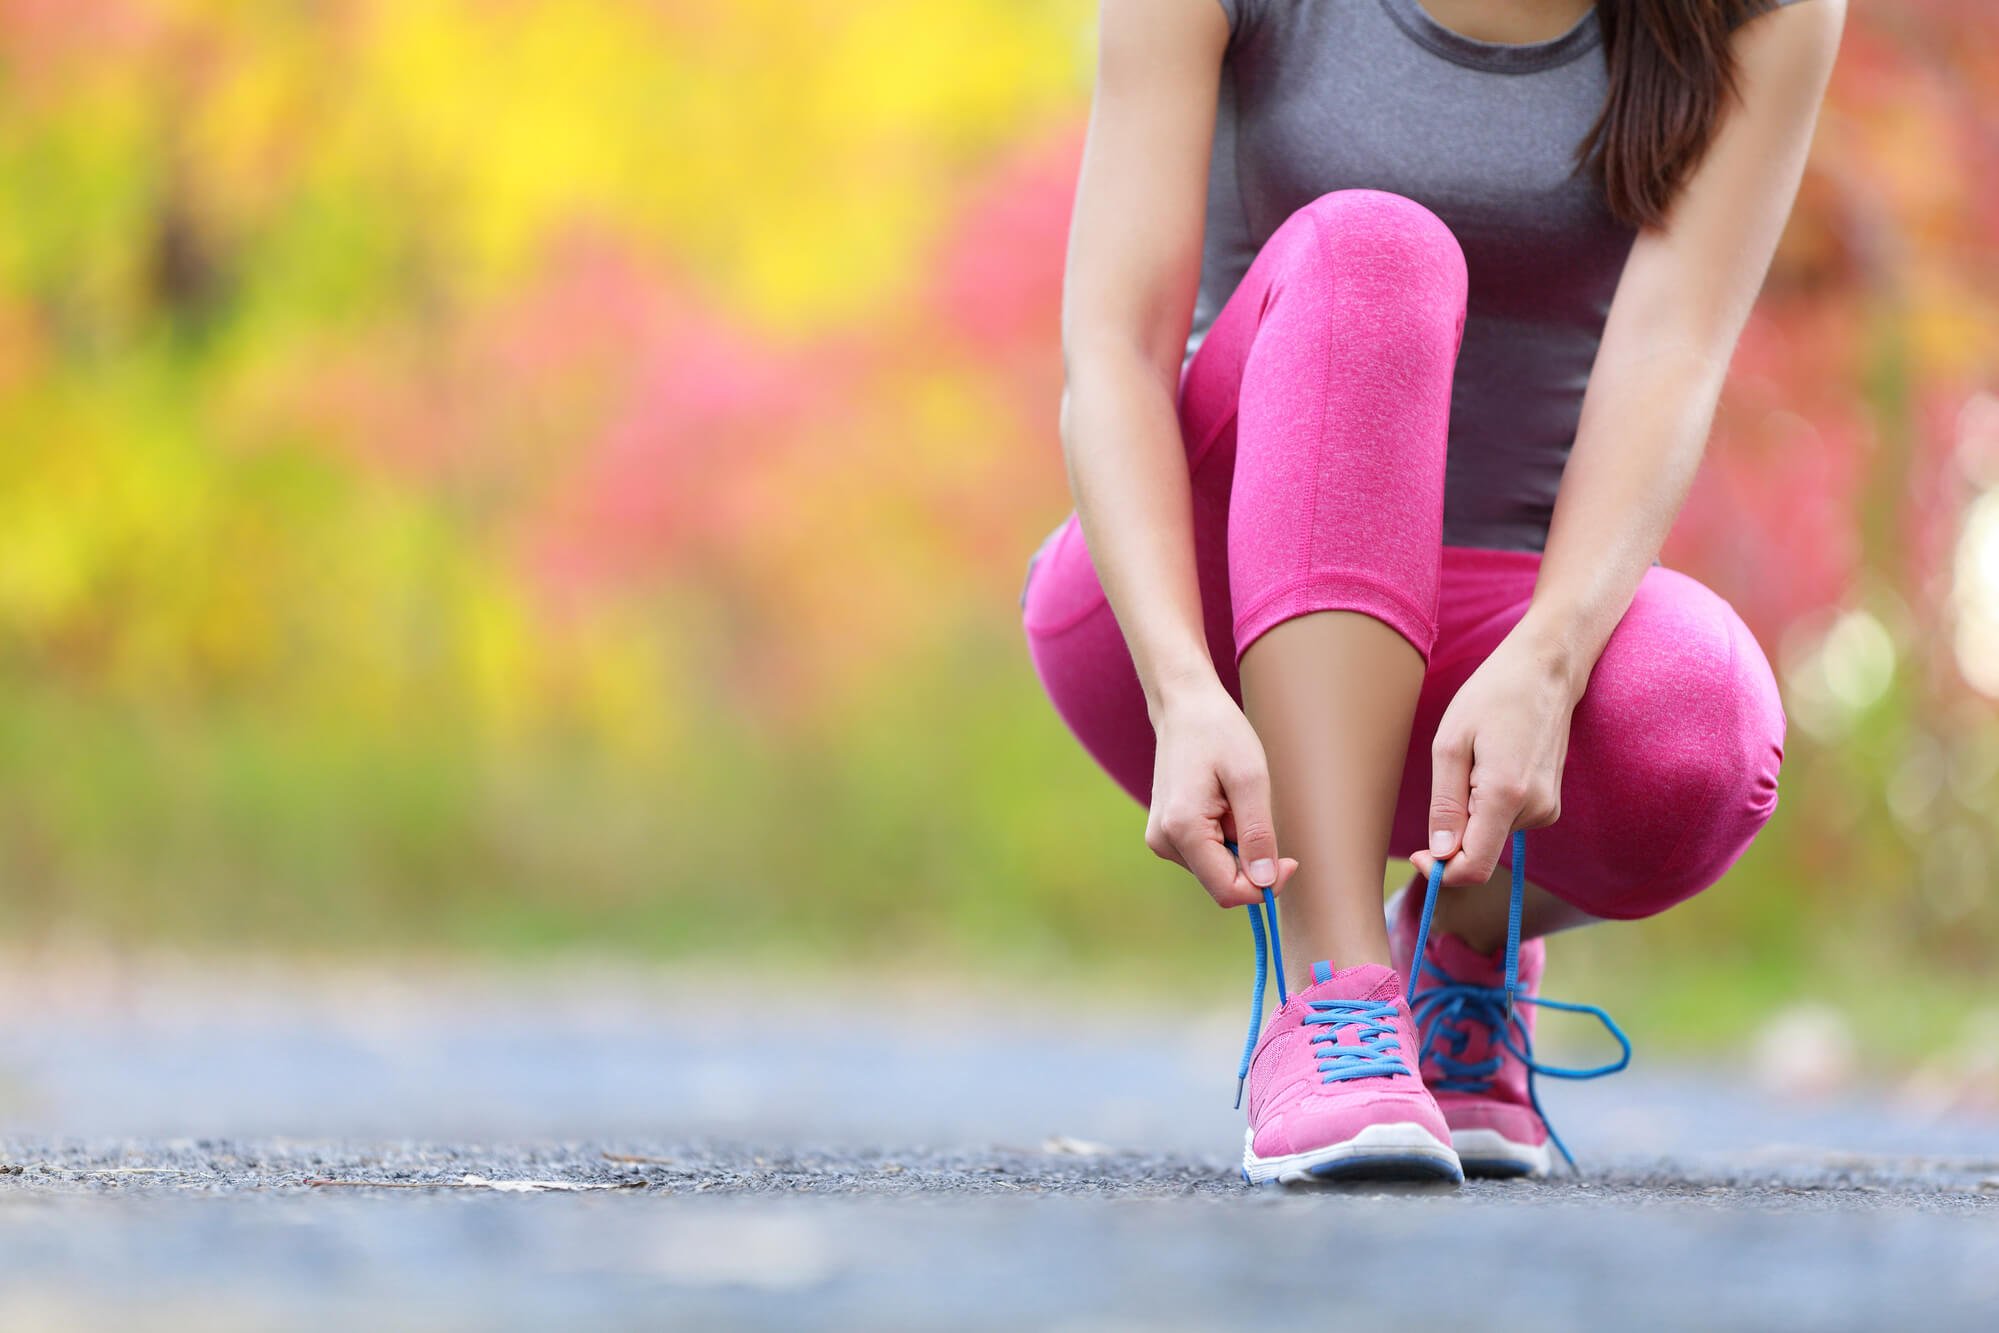 Τρέξιμο οφέλη: Ό,τι χρειάζεται να θυμηθείς για να ξεκινήσεις ξανά το τρέξιμο